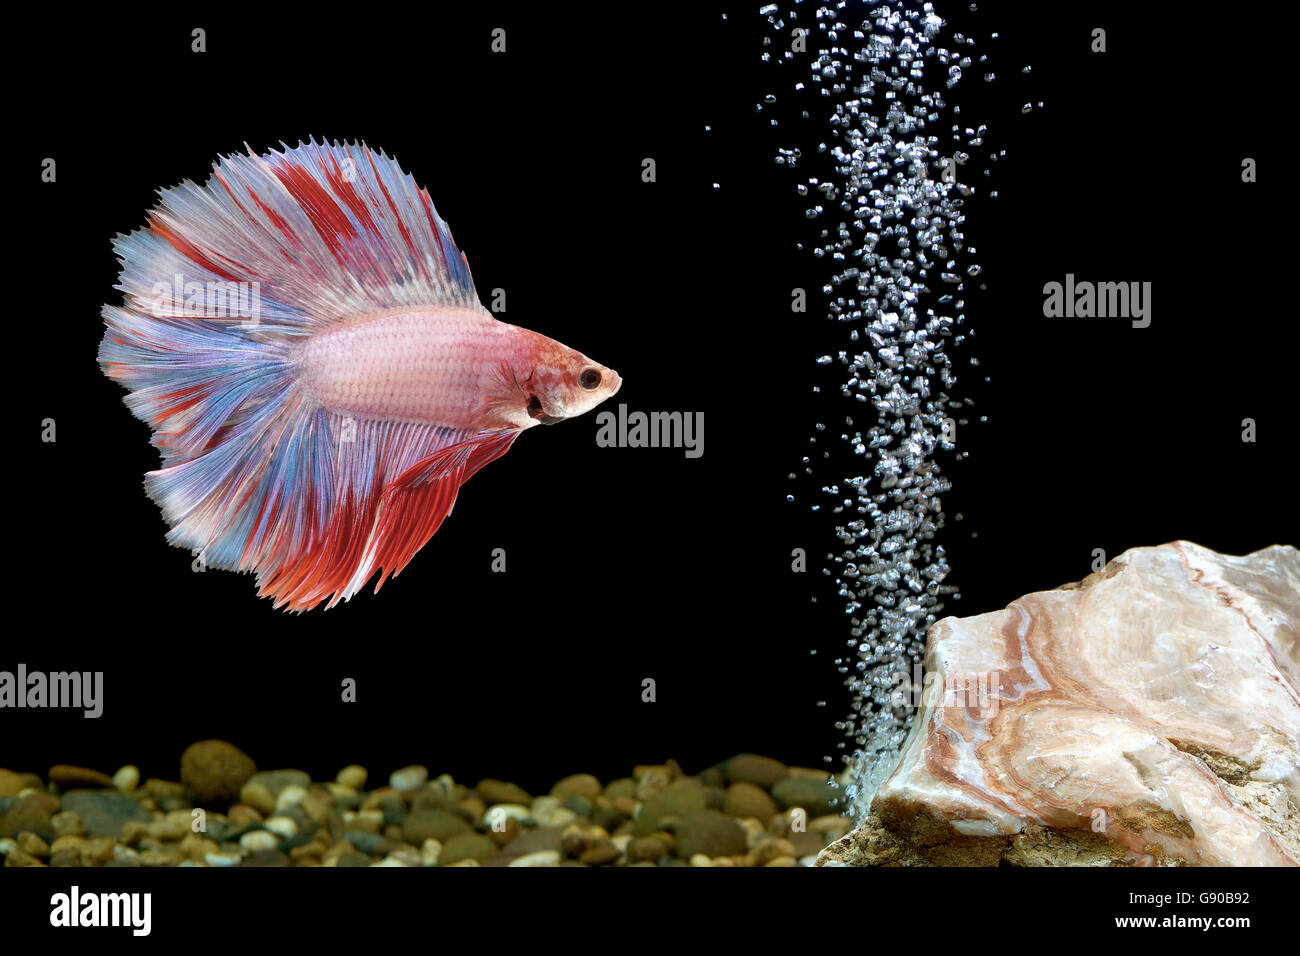 betta fish, siamese fighting fish in fishbowl Stock Photo